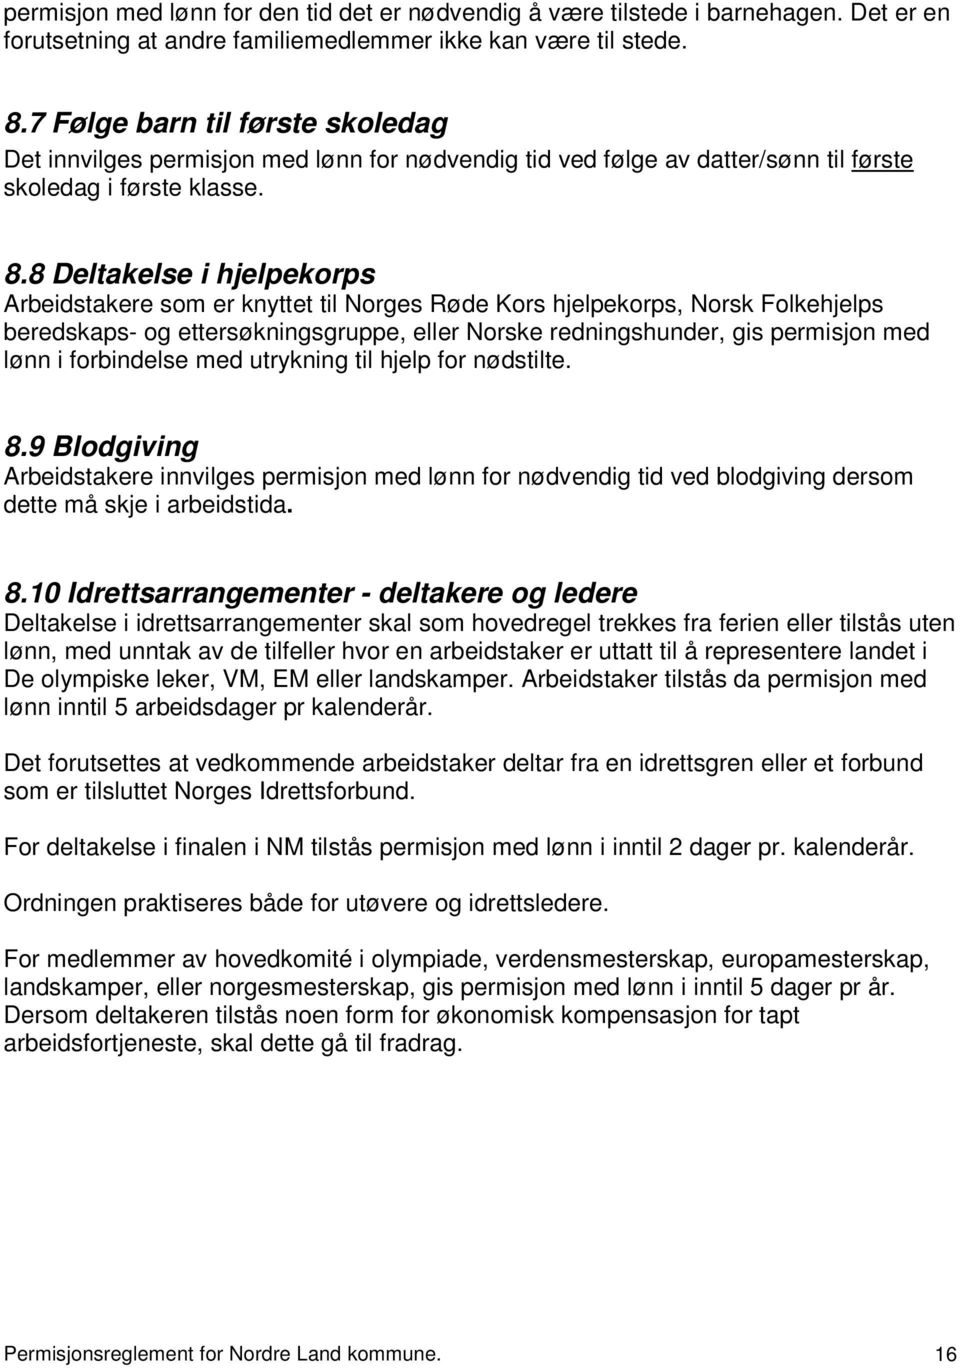 8 Deltakelse i hjelpekorps Arbeidstakere som er knyttet til Norges Røde Kors hjelpekorps, Norsk Folkehjelps beredskaps- og ettersøkningsgruppe, eller Norske redningshunder, gis permisjon med lønn i